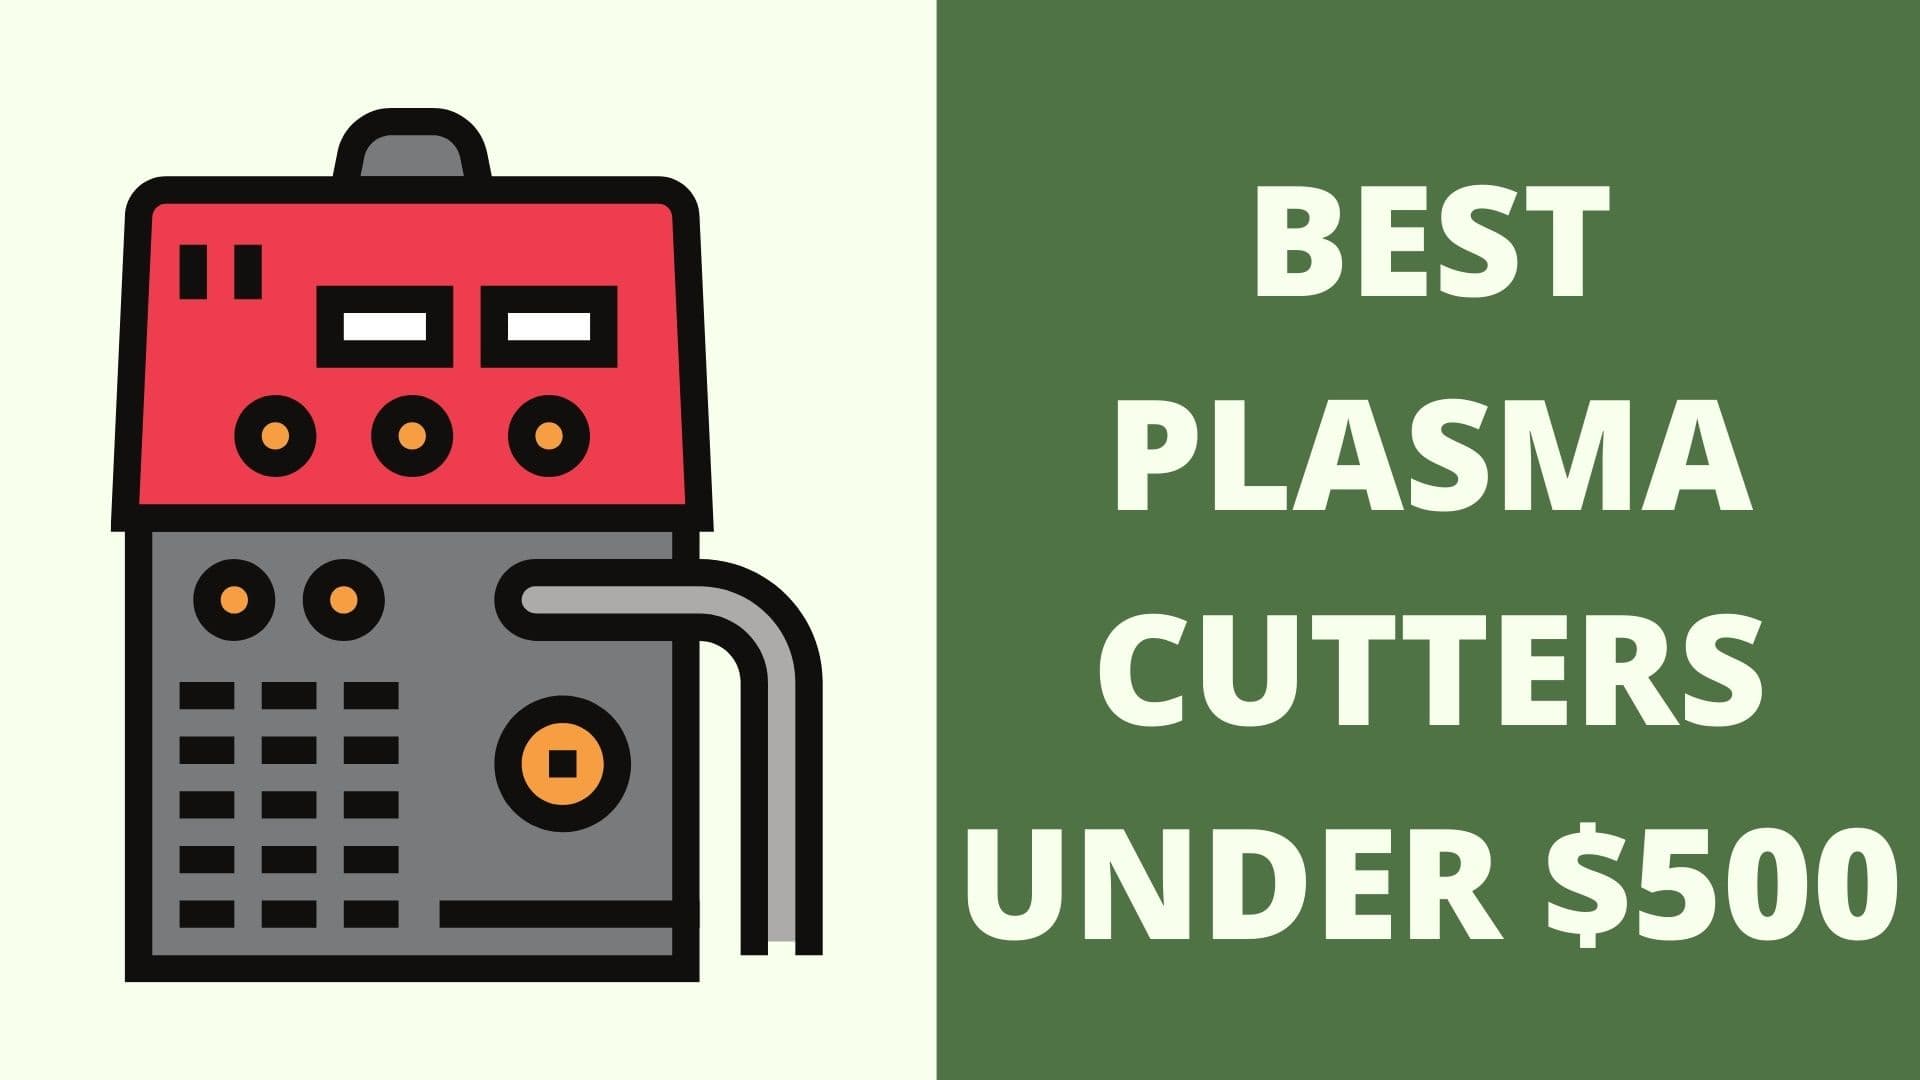 Best plasma cutters under $500